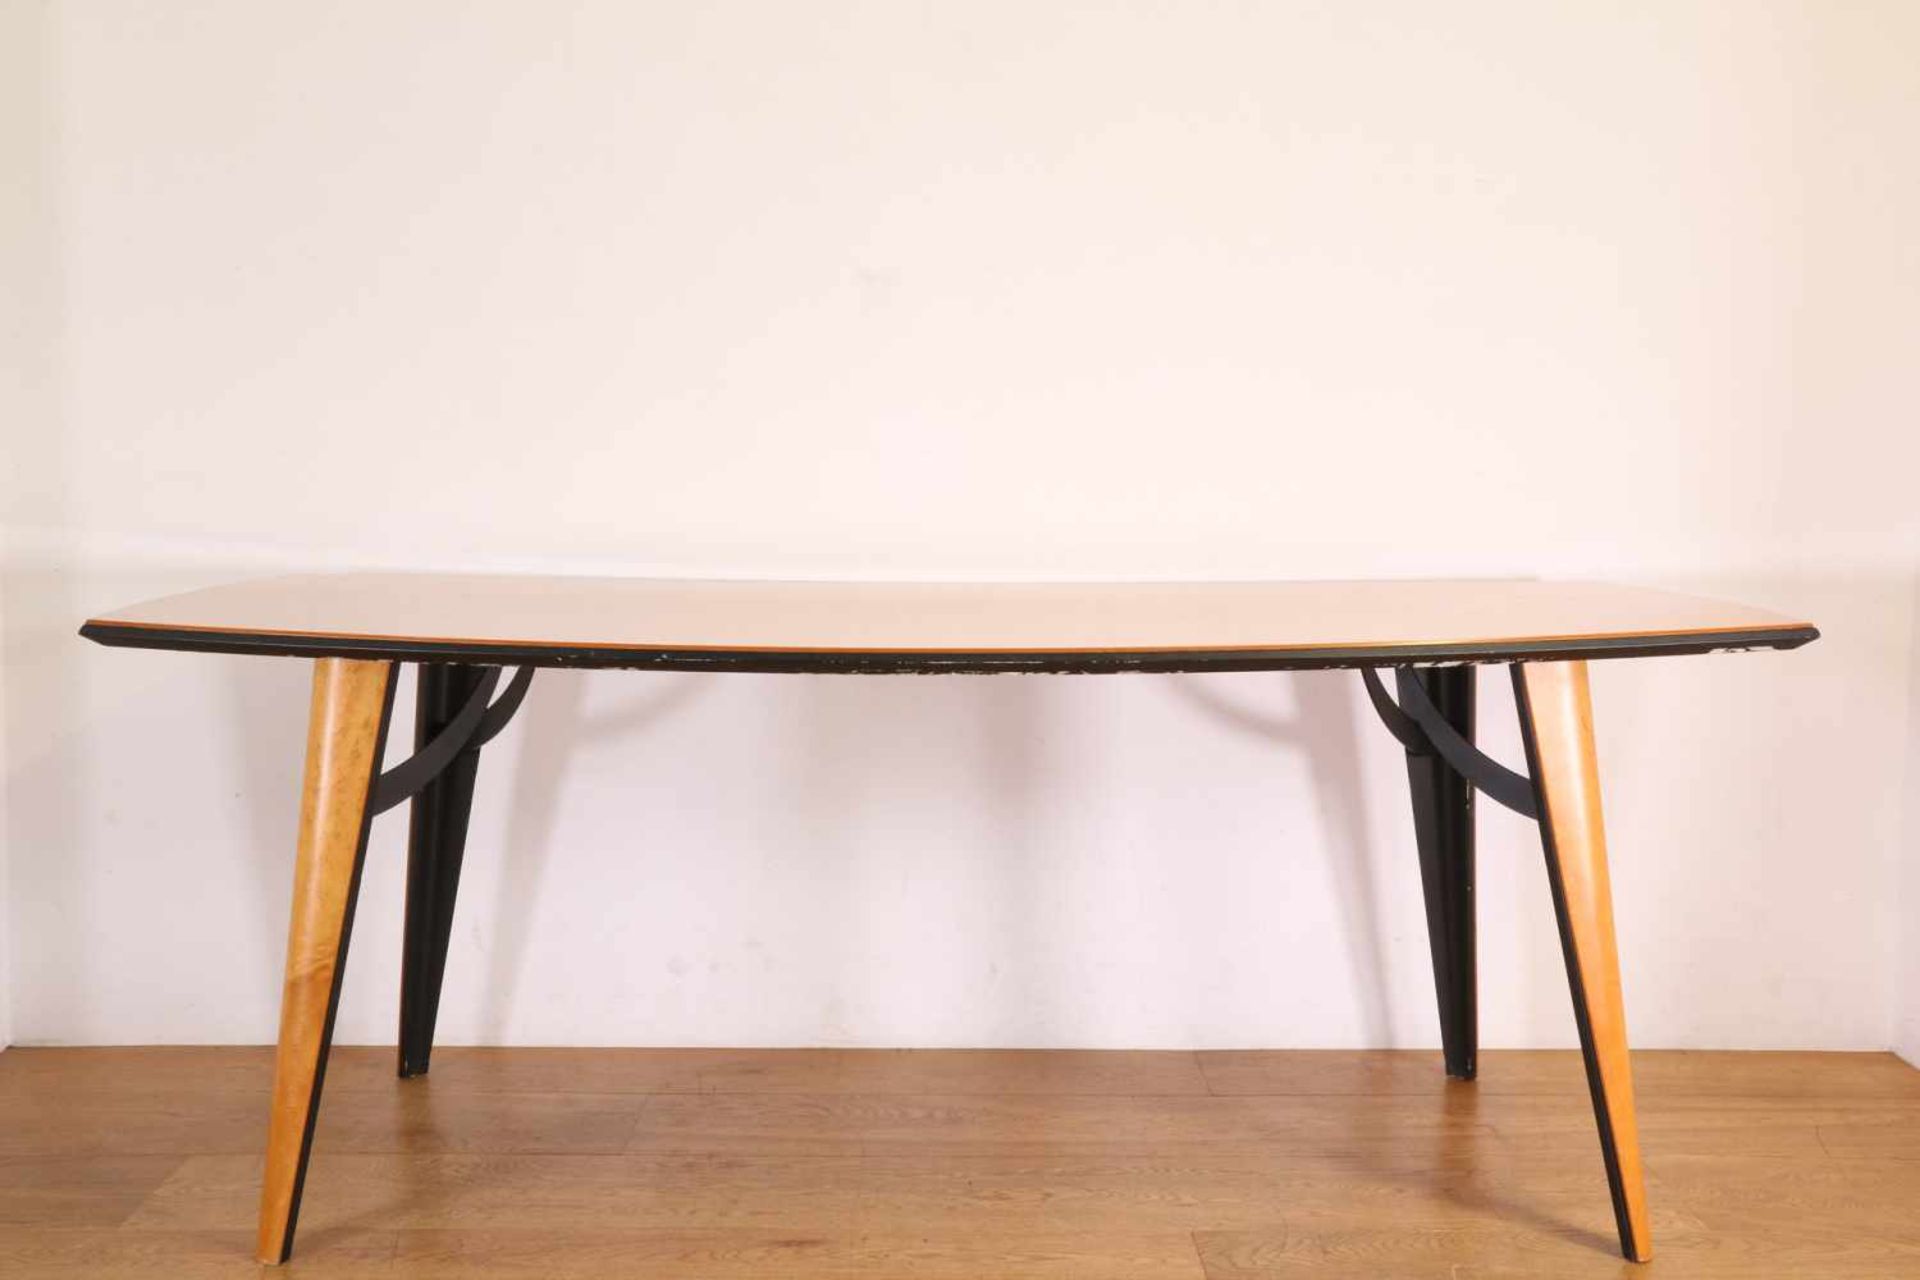 Esdoornwortelhouten langwerpige tafel , model TS 200, fabrikaat Castelijn,met zwarte kunststof